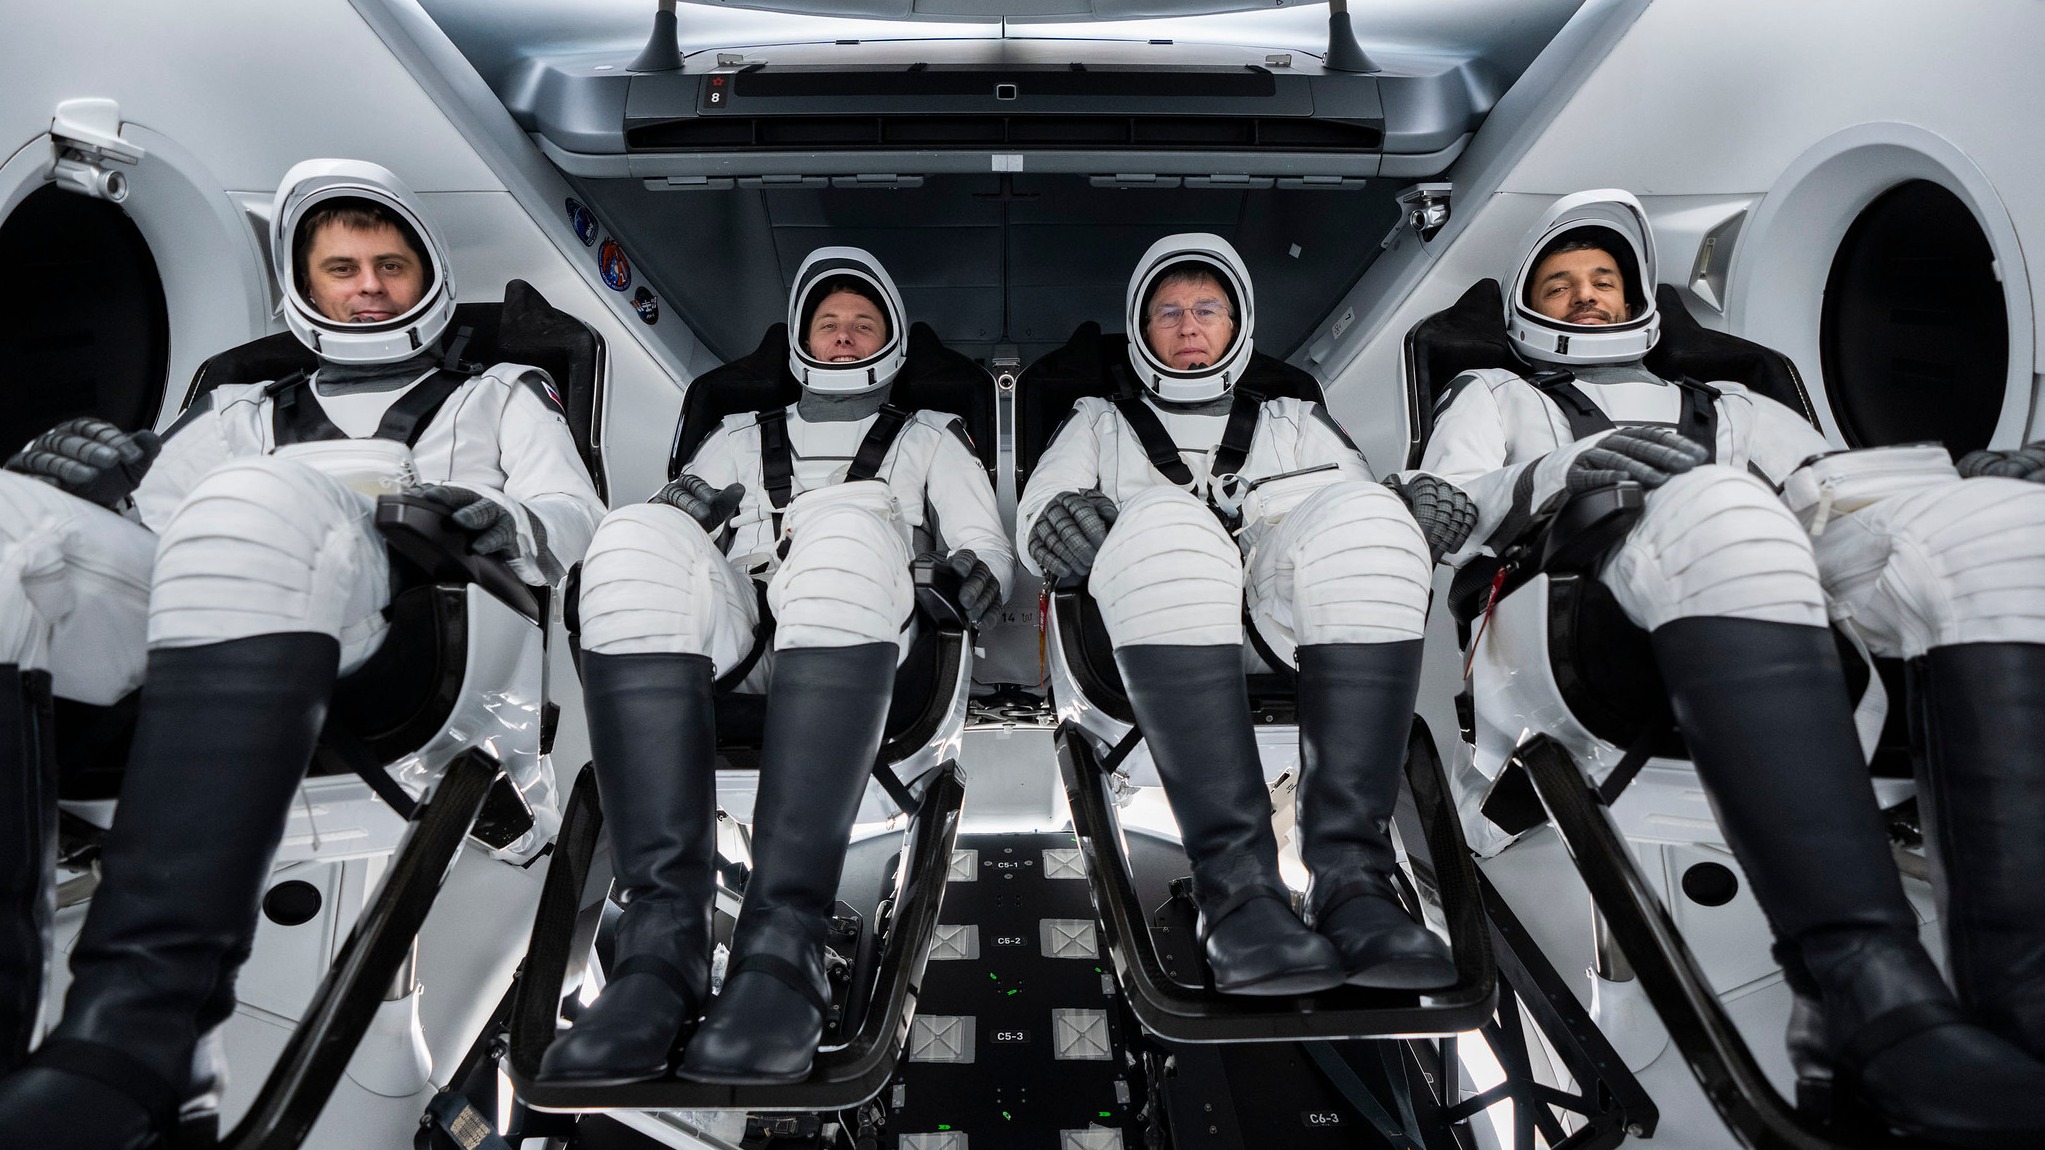 Cuatro astronautas sentados en una tripulación de dragones con trajes espaciales y cinturones de seguridad